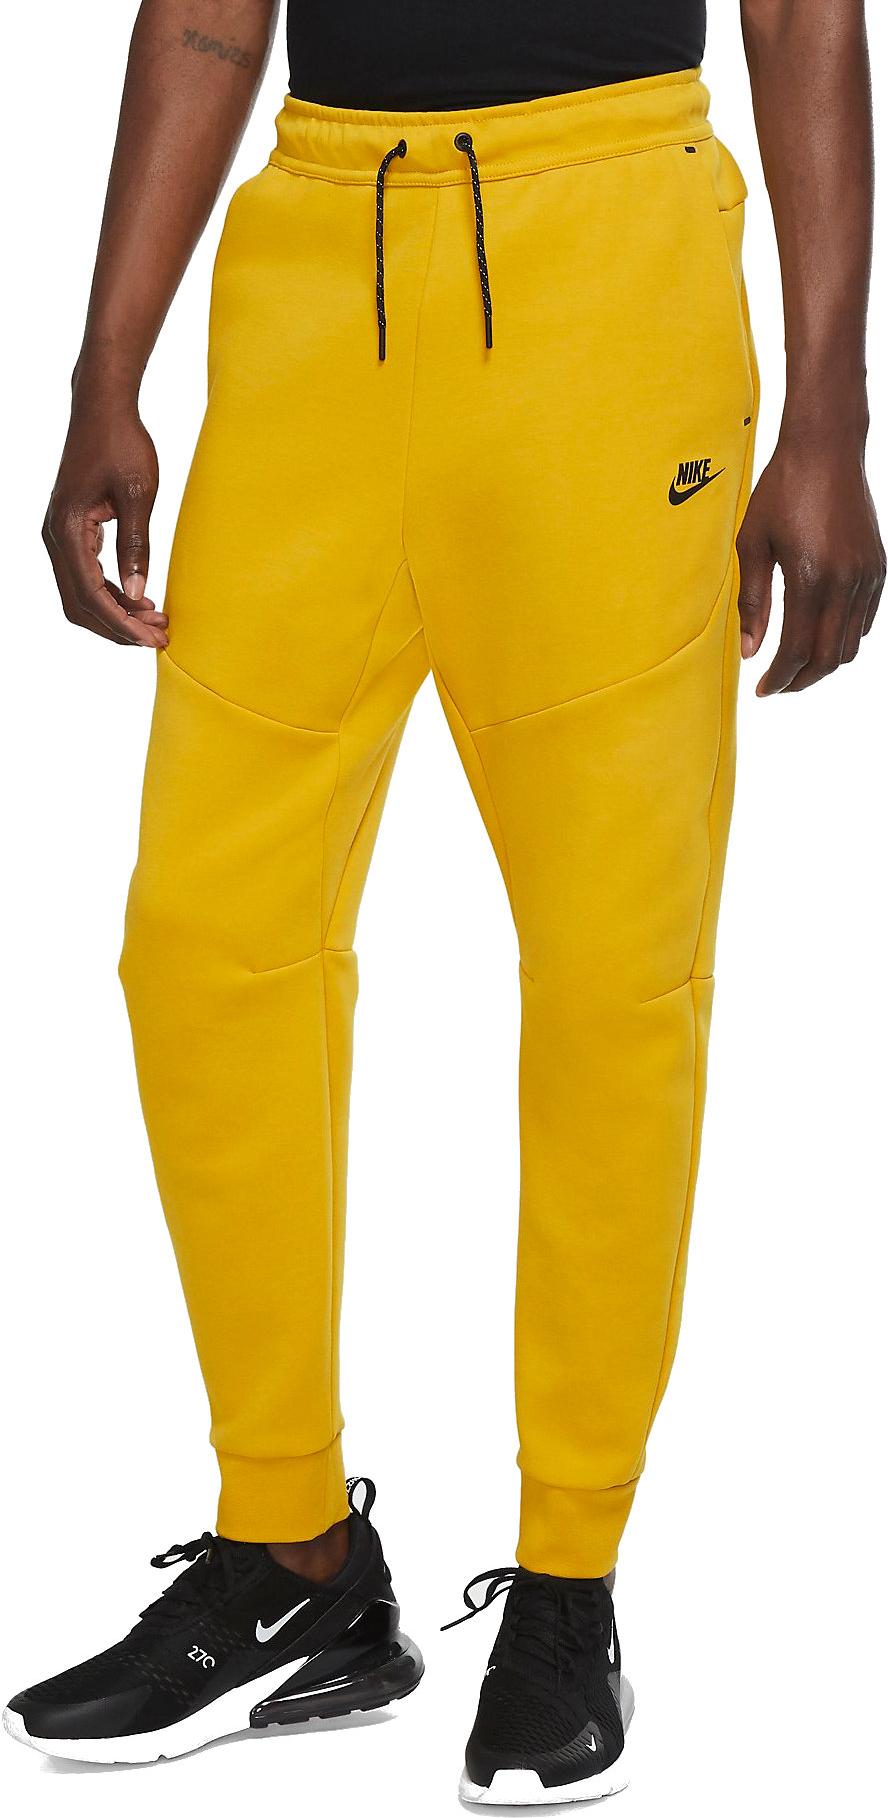 nike tech fleece pants yellow